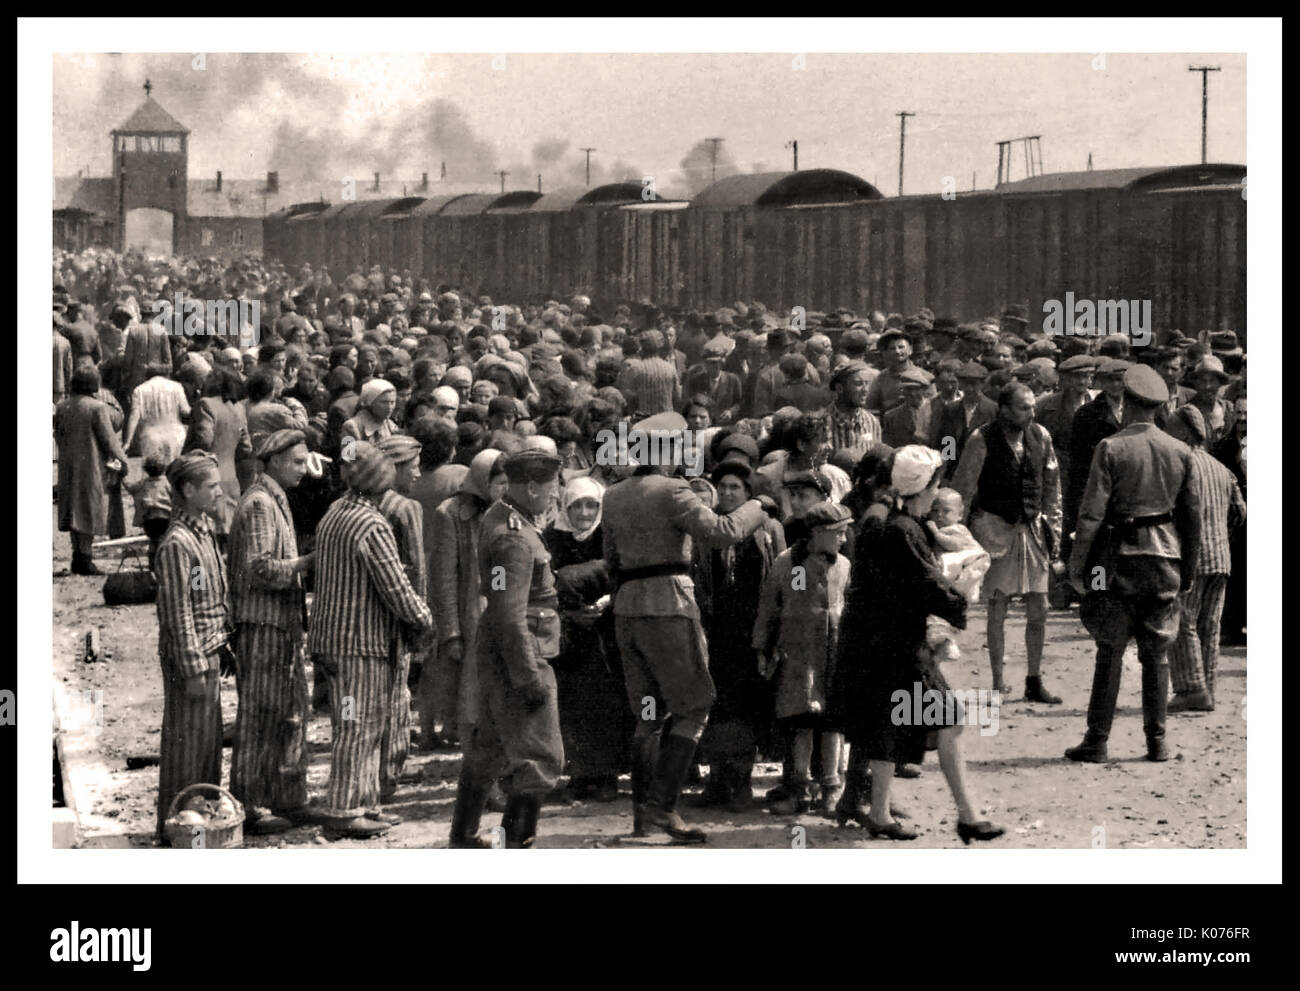 AUSCHWITZ-BIRKENAU L'ARRIVÉE DES PRISONNIERS DE L'HOLOCAUSTE - Une vision saisissante d'un enfer sur terre.1944, Nazis 'classement' (la vie ou la mort impérative) sans se méfiant les adultes et les enfants récemment arrivés sur le concourse ferroviaire, à l'extérieur de l'entrée du camp de décès d'extermination d'Auschwitz-Birkenau.Le tristement célèbre camp d'Auschwitz a été lancé par ordre d'Adolf Hitler dans les années 1940, pendant l'occupation de la Pologne par l'Allemagne nazie pendant la guerre mondiale 2, encore rendu possible par Heinrich Luitpold Himmler le Reichsführer du Schutzstaffel, et membre principal du Parti nazi d'Allemagne Banque D'Images